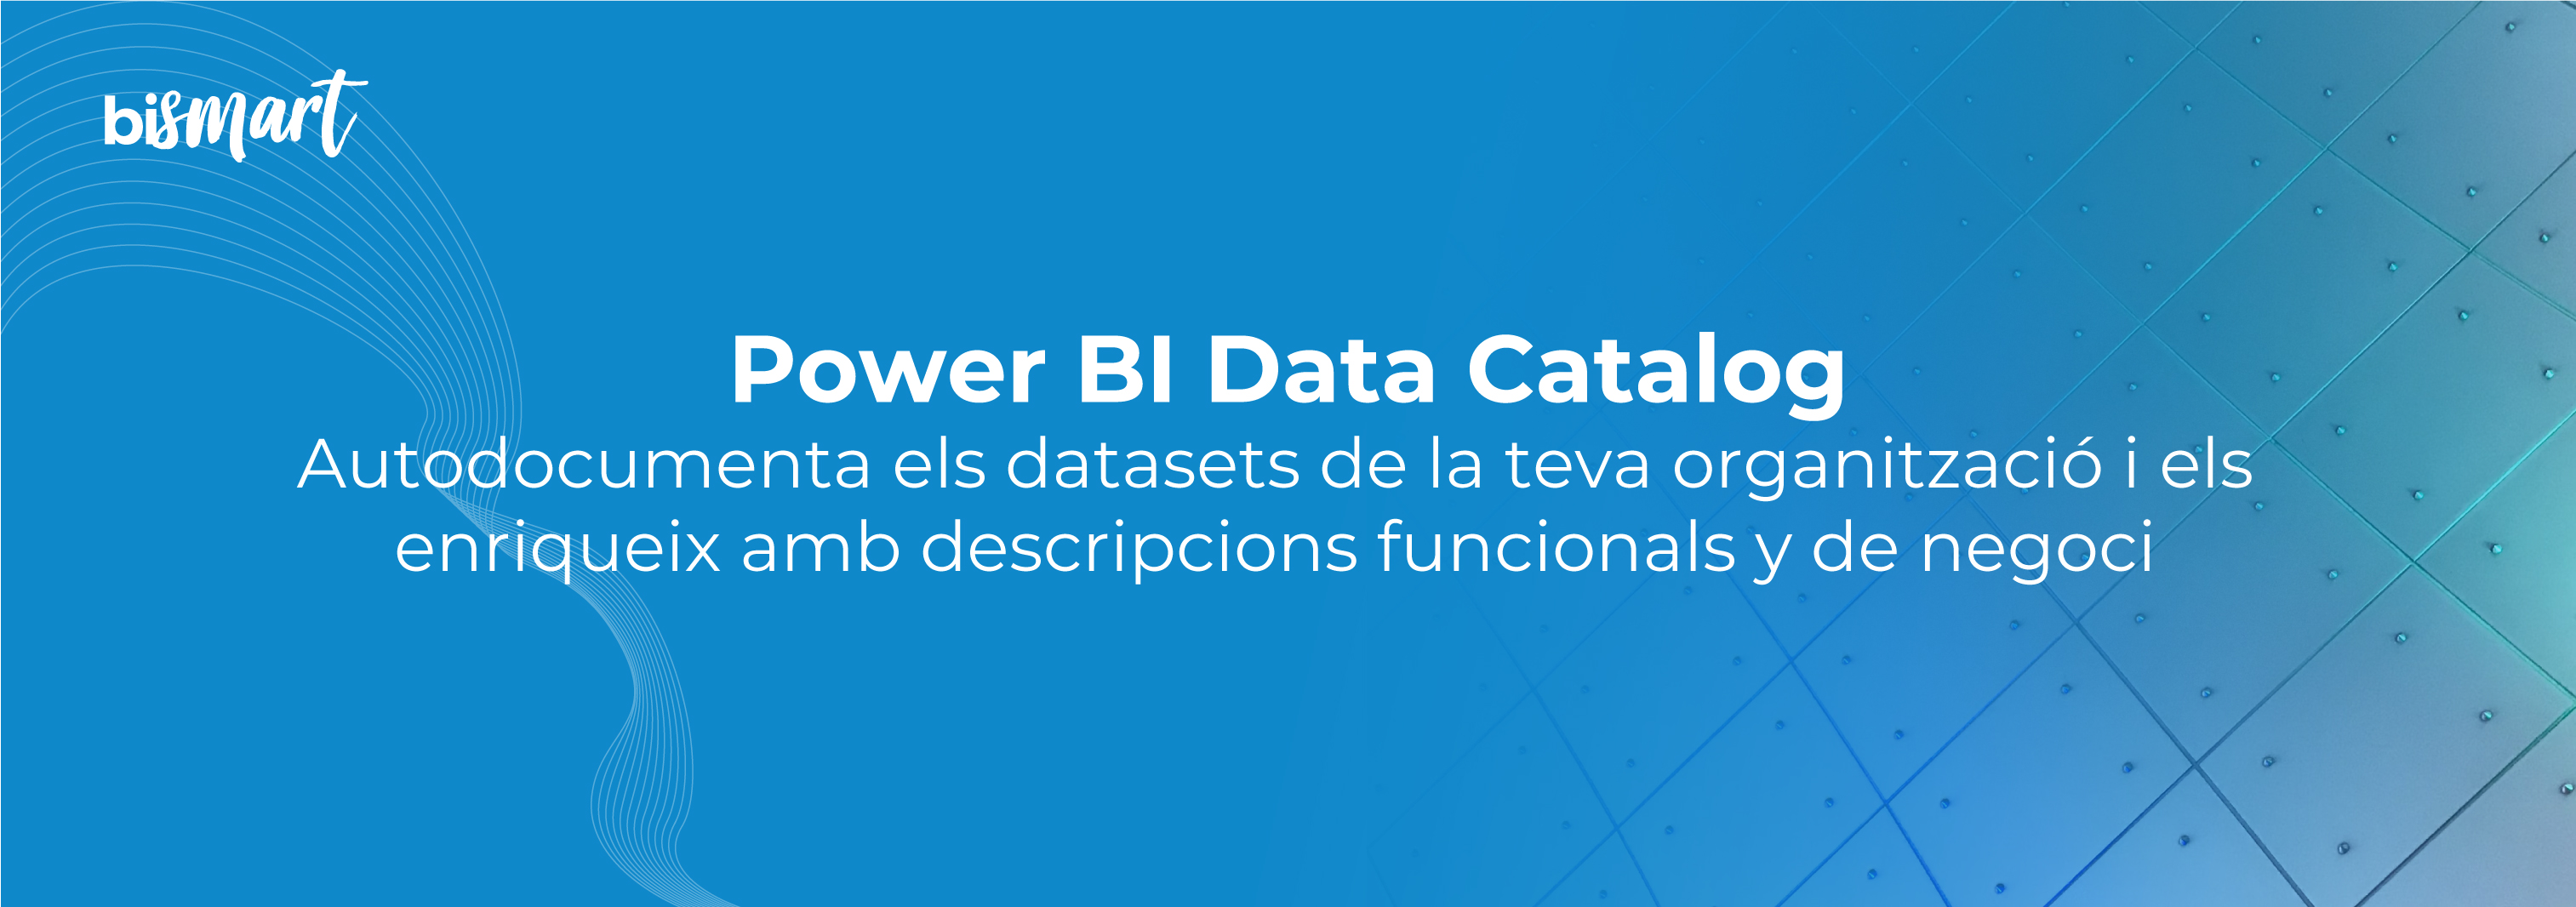 PowerBI-Data-Catalog-banner-CA